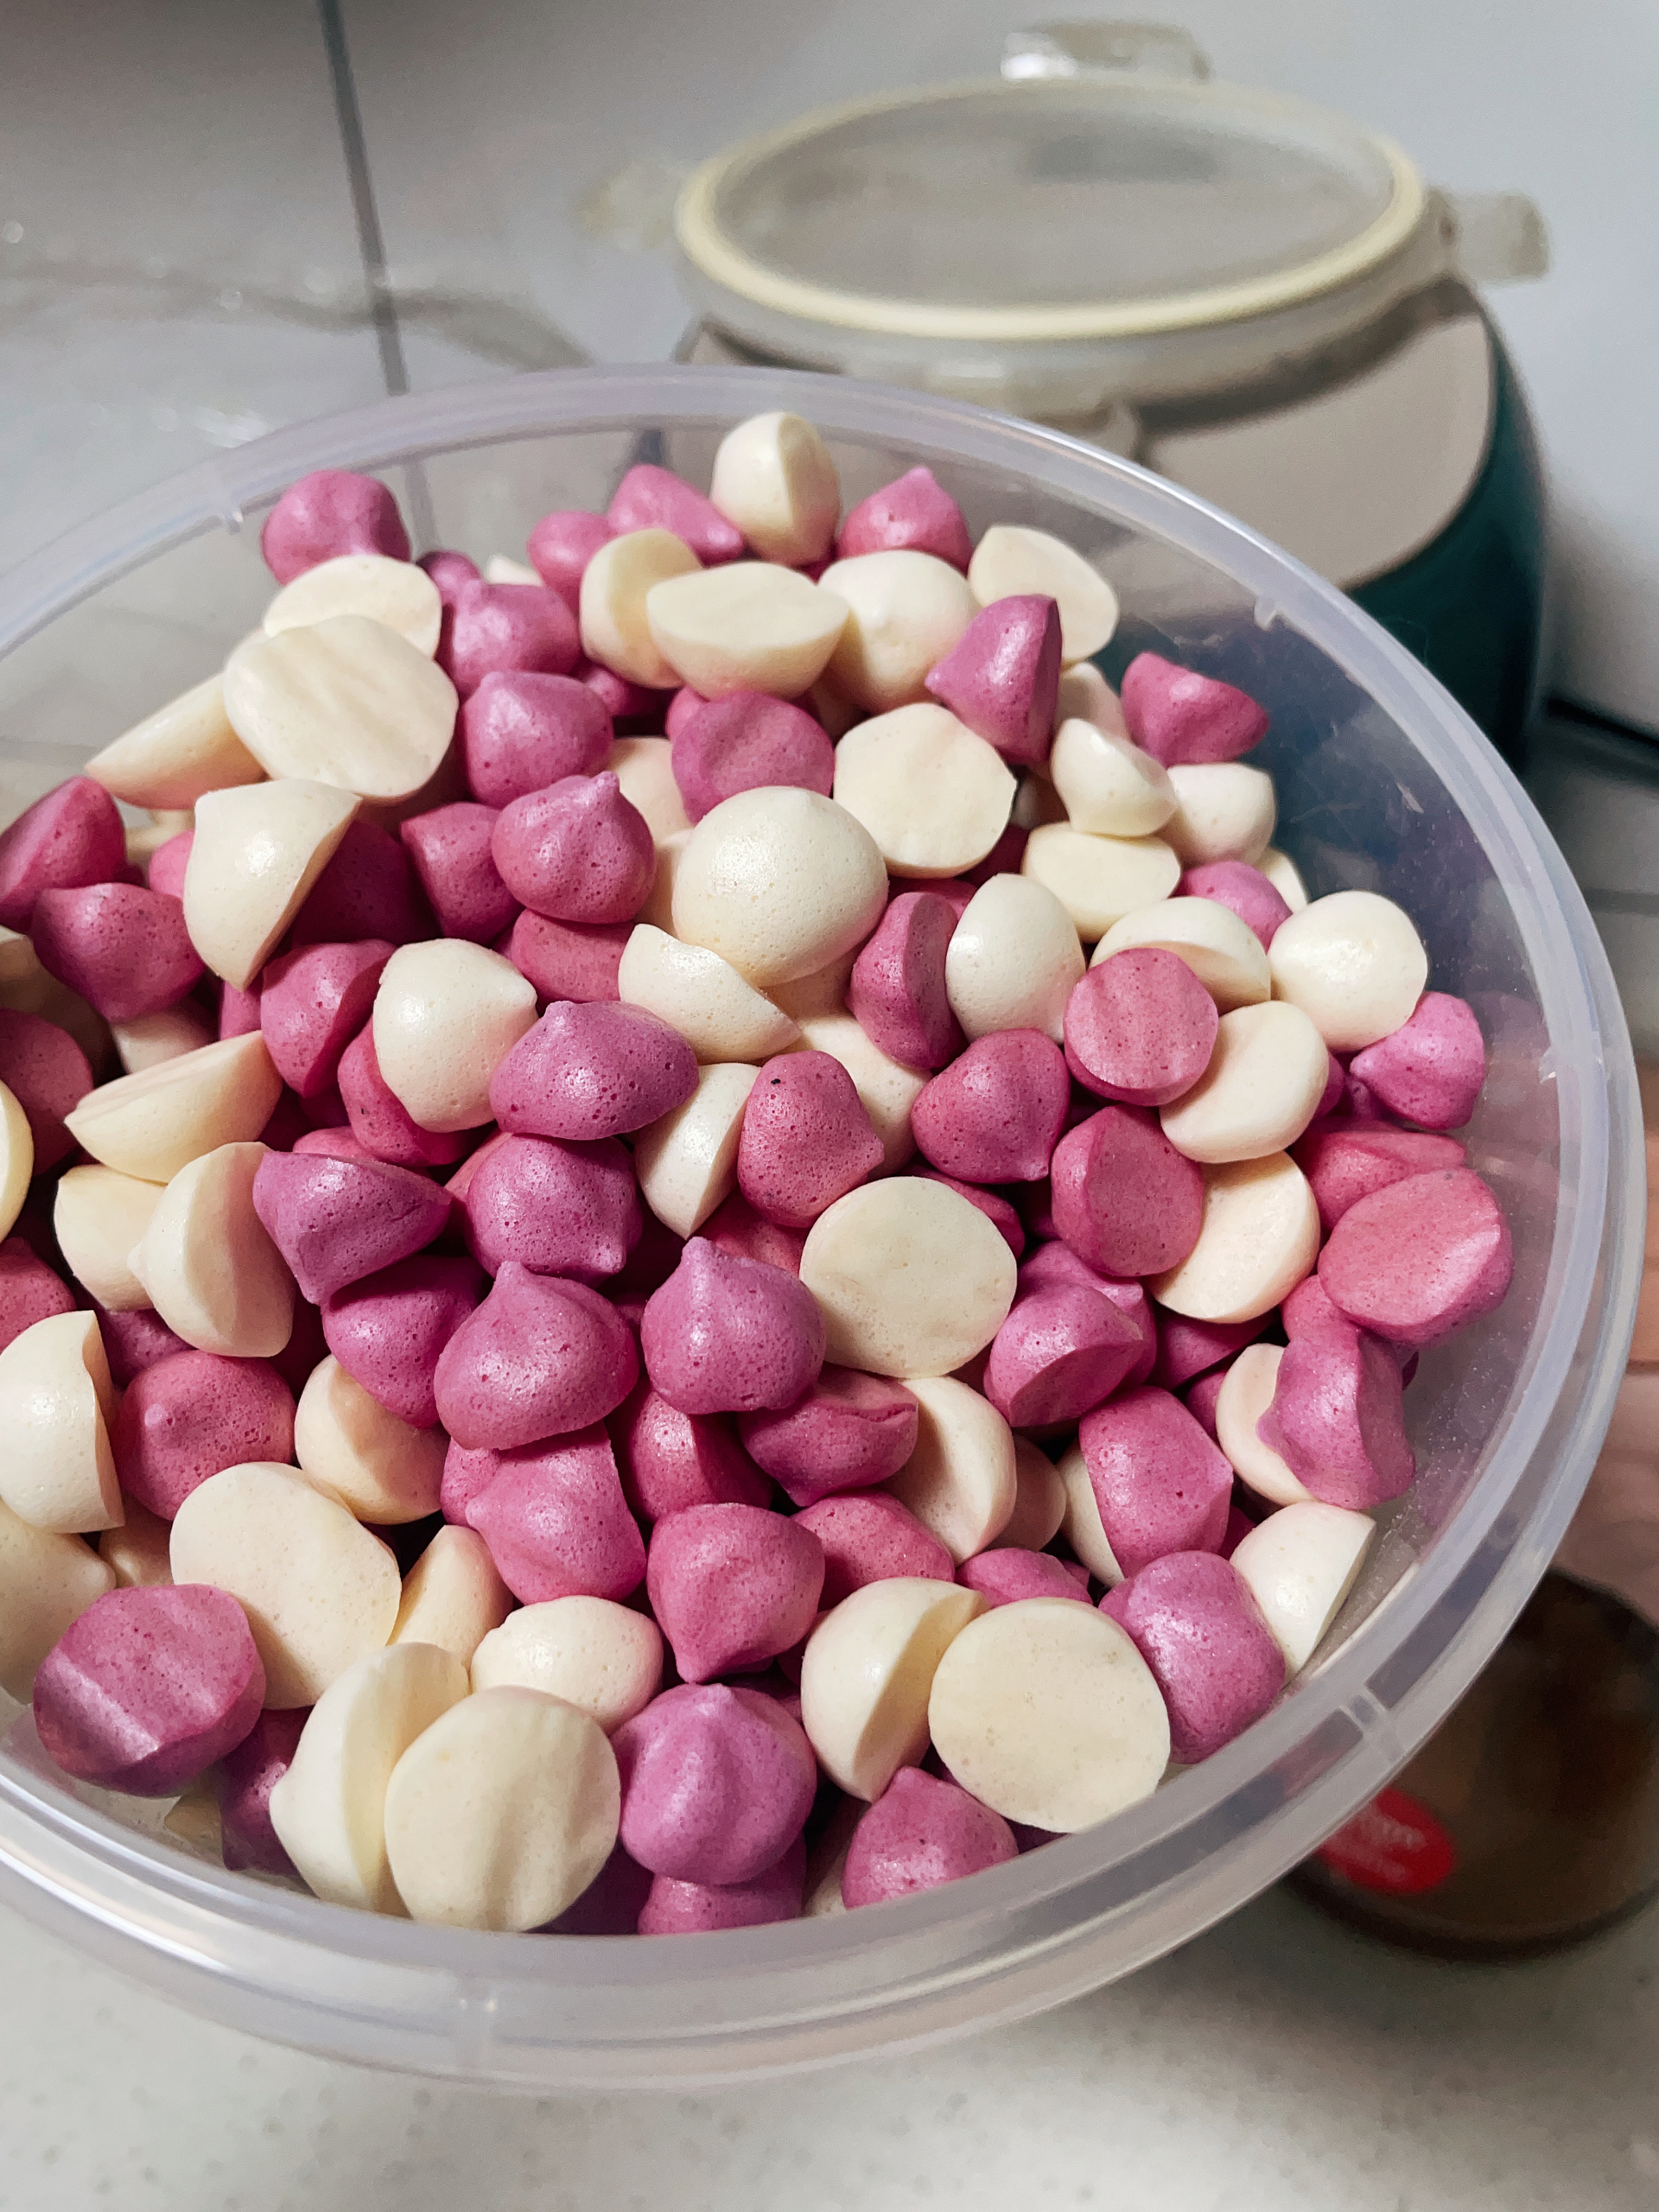 百分之九十九成功的专业版火龙果溶豆做法附蛋白霜打发视频